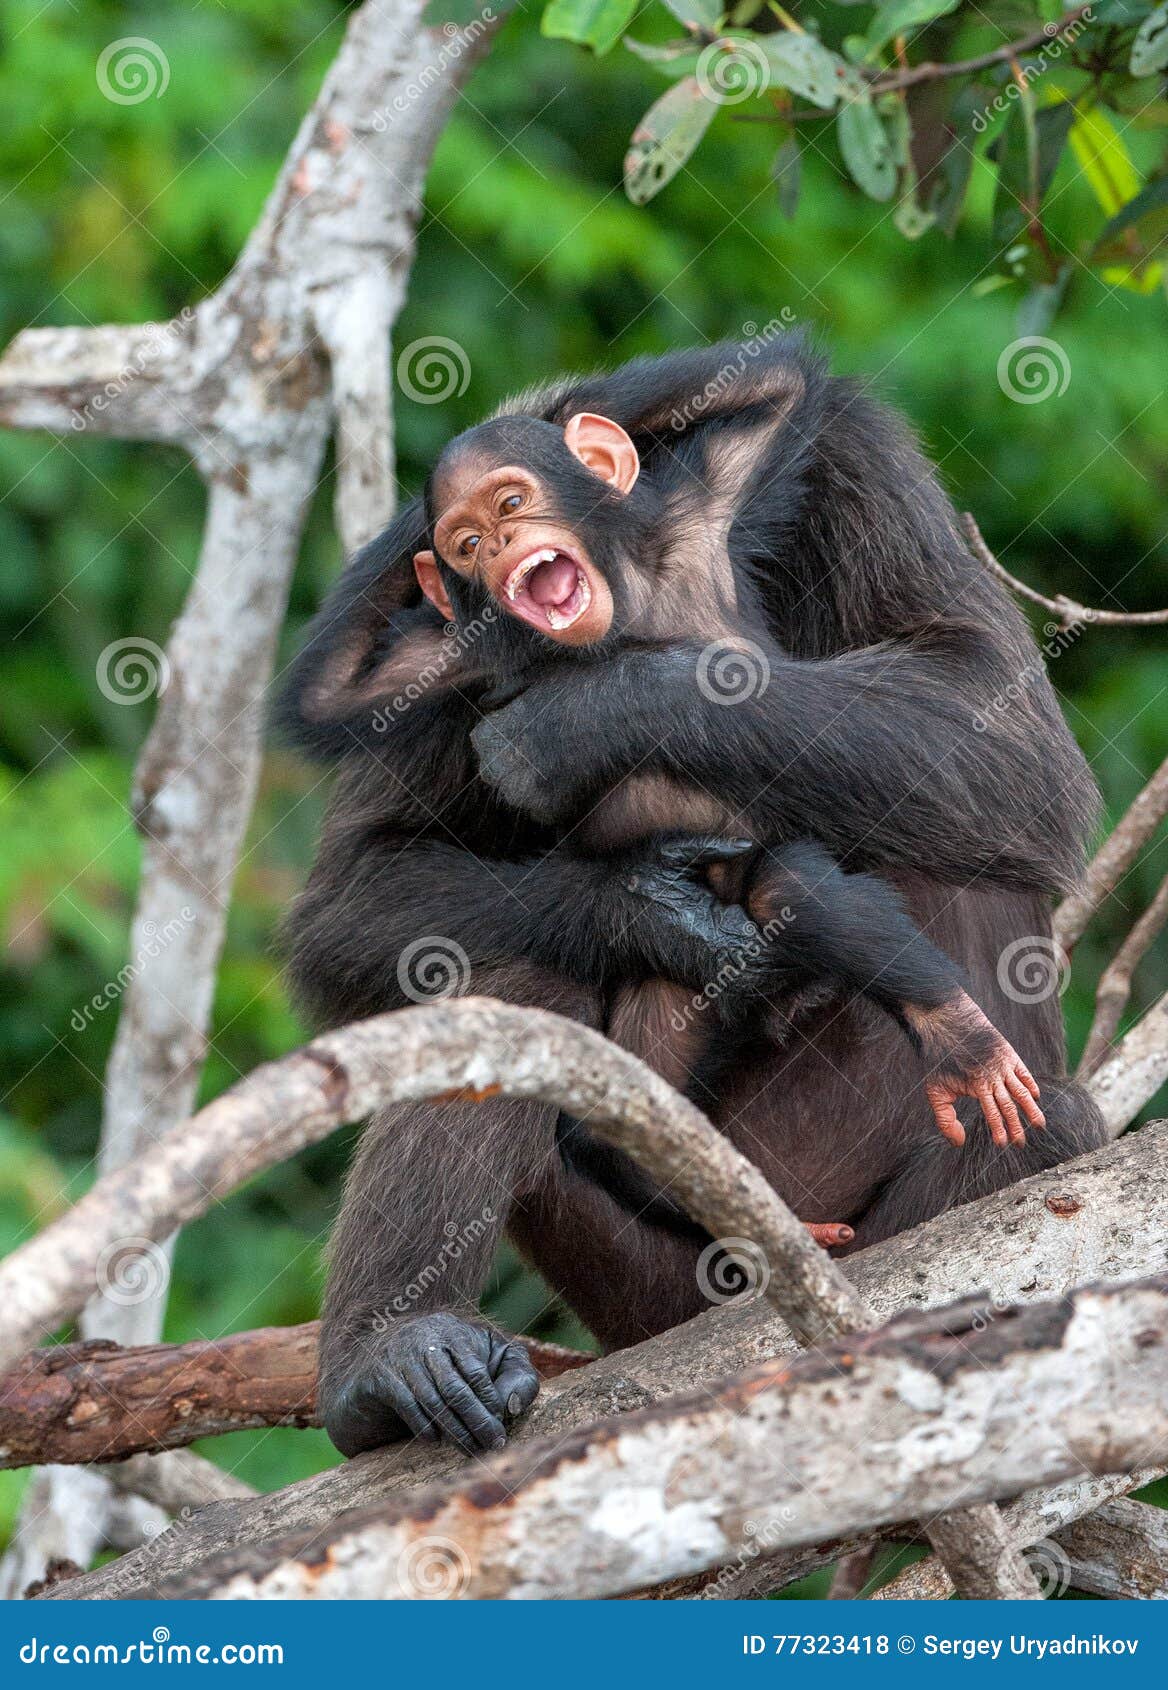 chimpanzee (pan troglodytes)